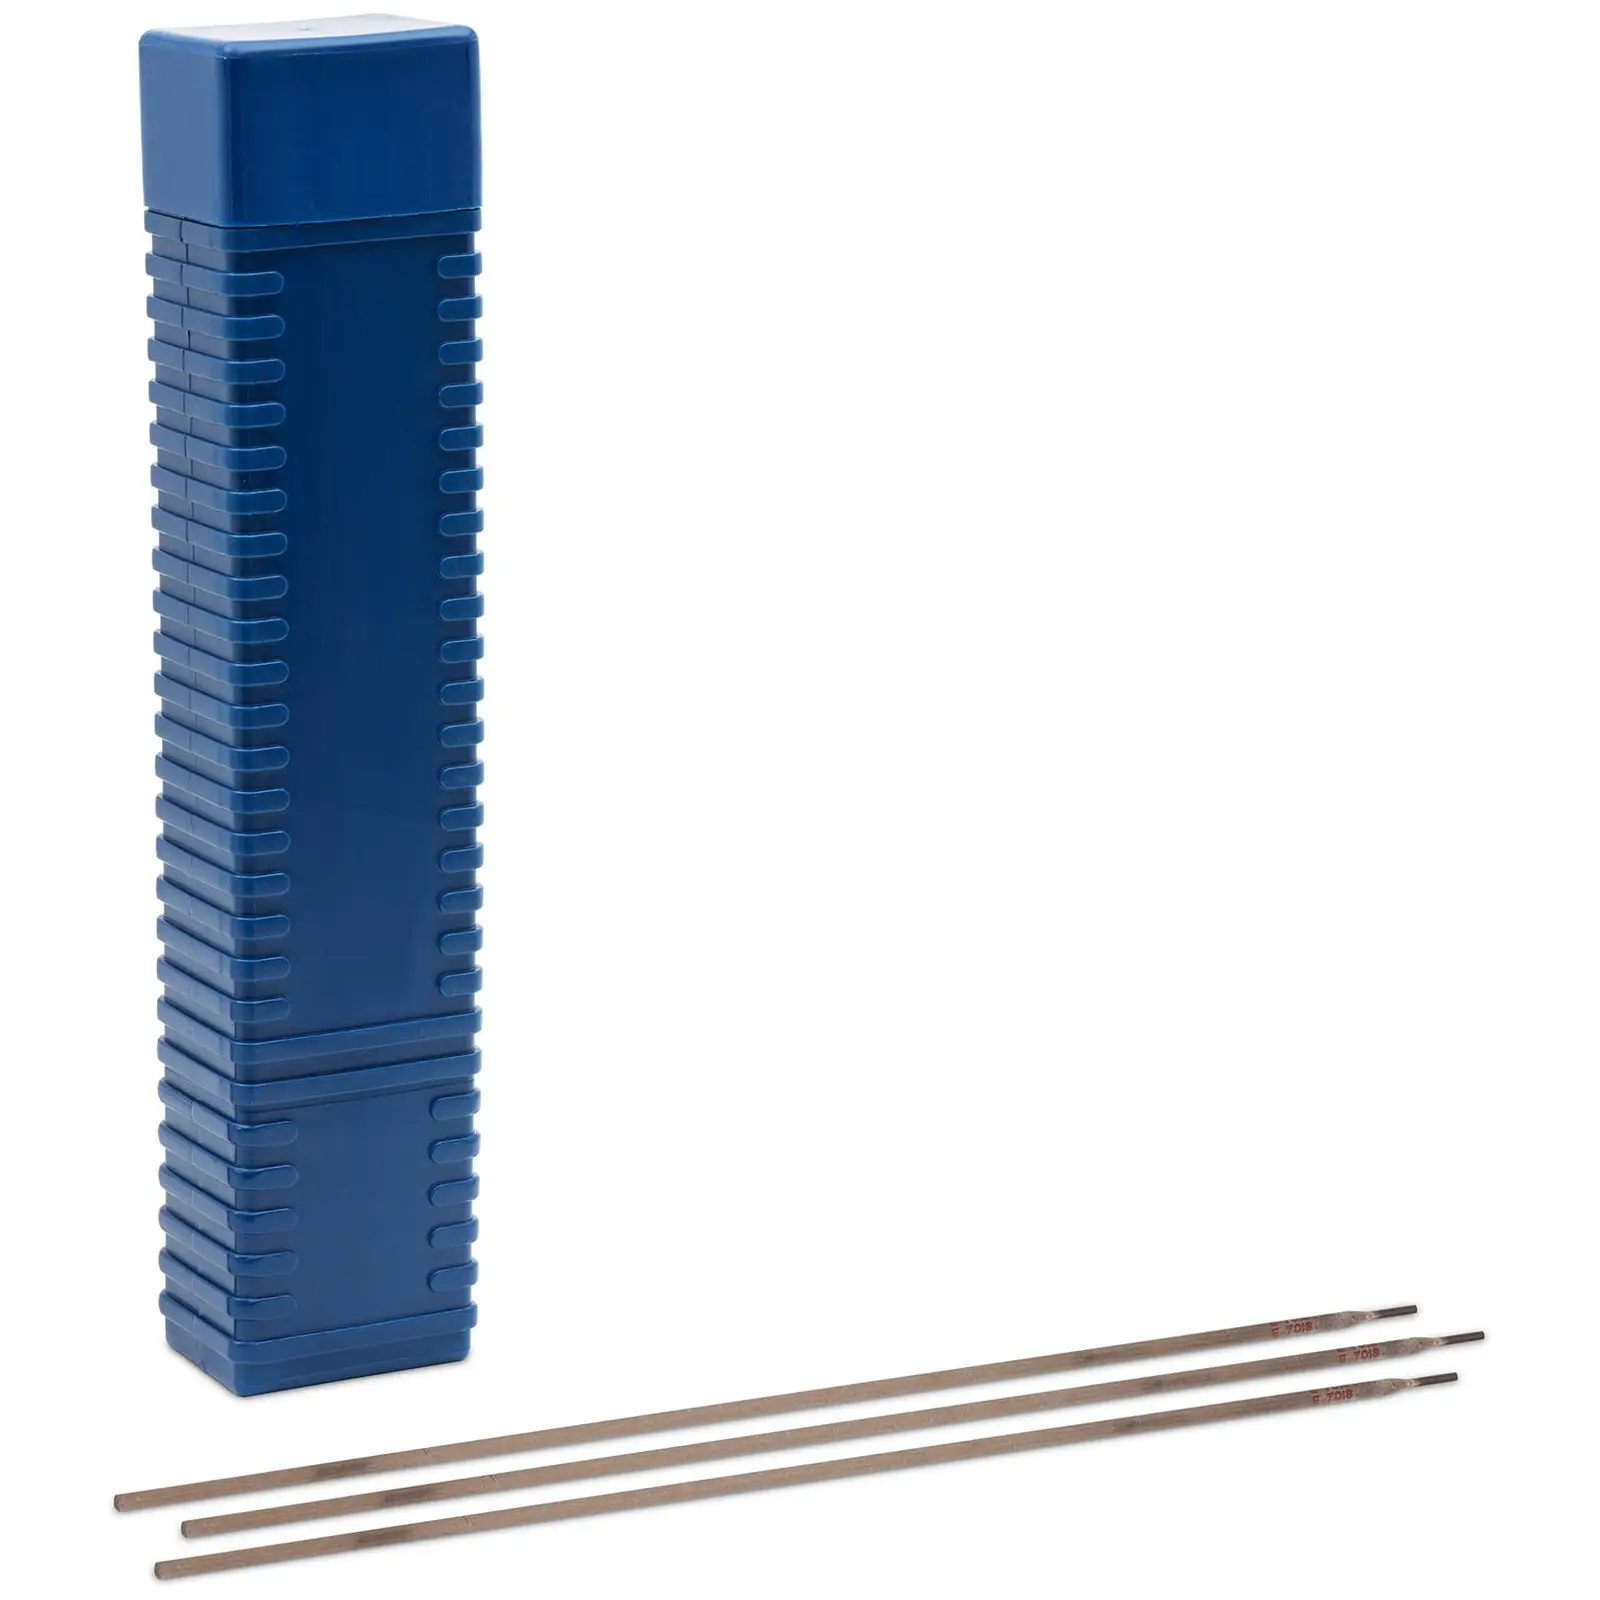 Varilne palice - za jekla - osnovne - Ø 3.25 x 450 mm - 5 kg